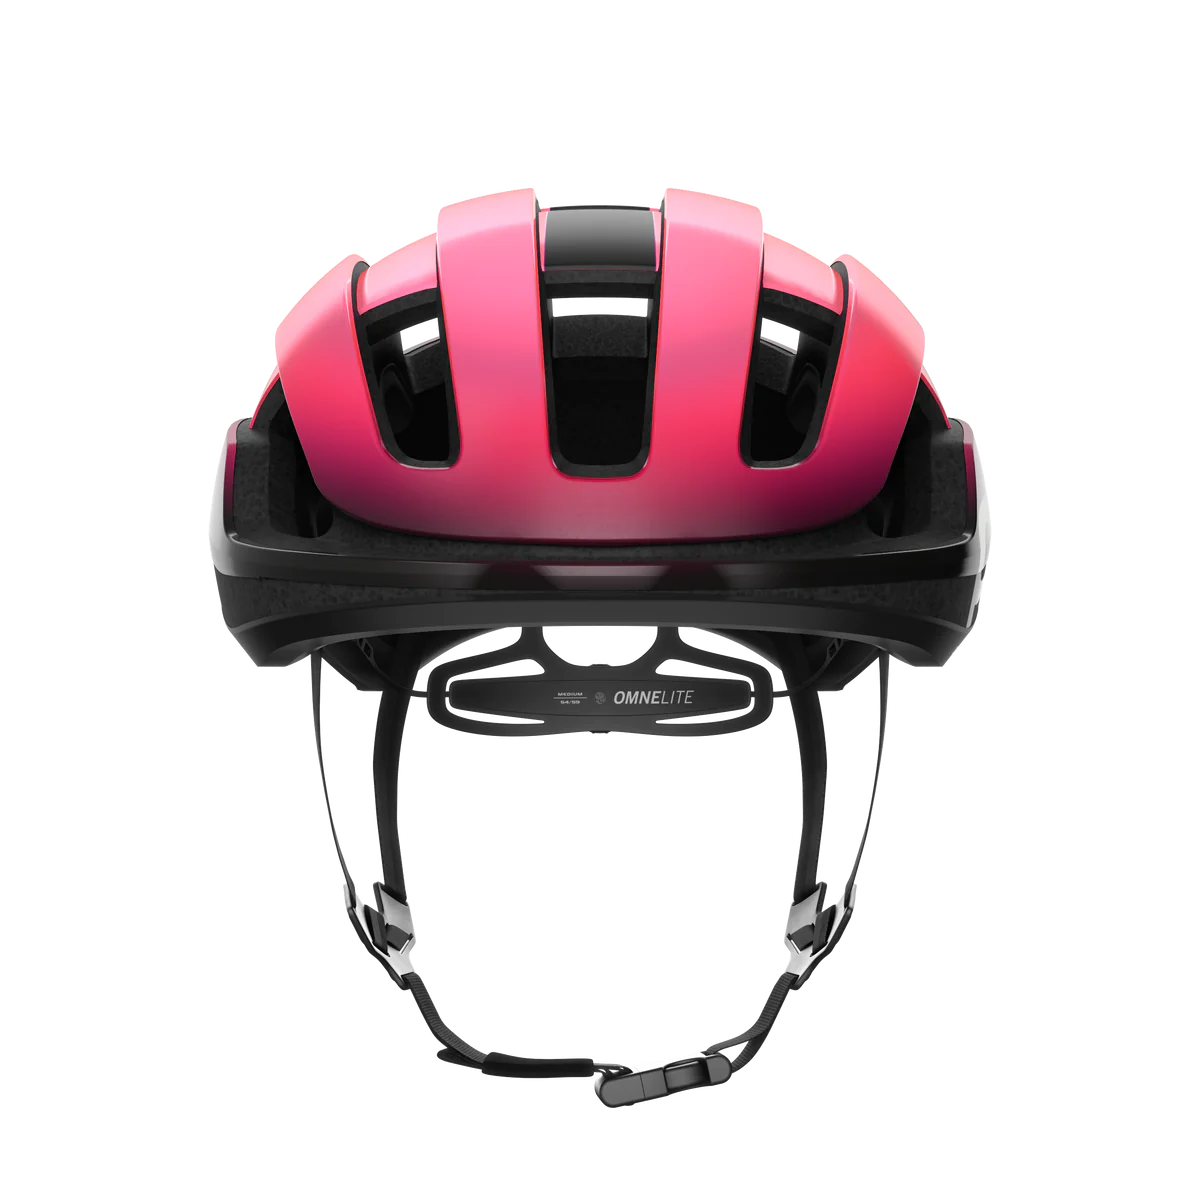 ロードバイク用ヘルメット 10793-8635 オムネライトアジアンフィット Omne Lite Wf - Fluorescent Pink/Uranium Black [ユニセックス]